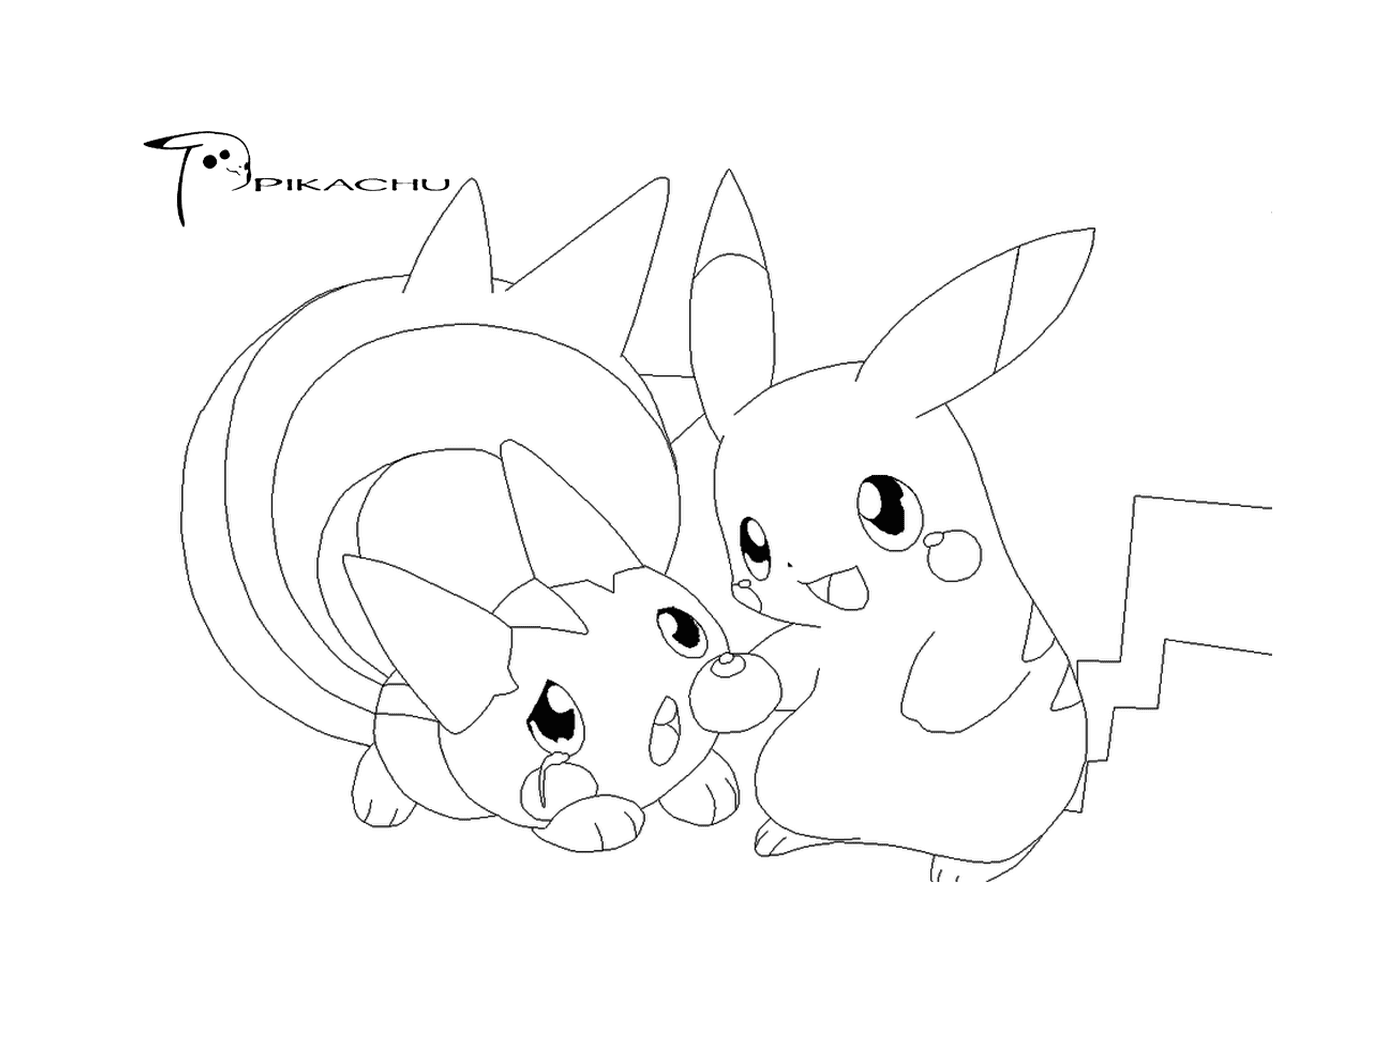   Deux Pikachus se tiennent ensemble 